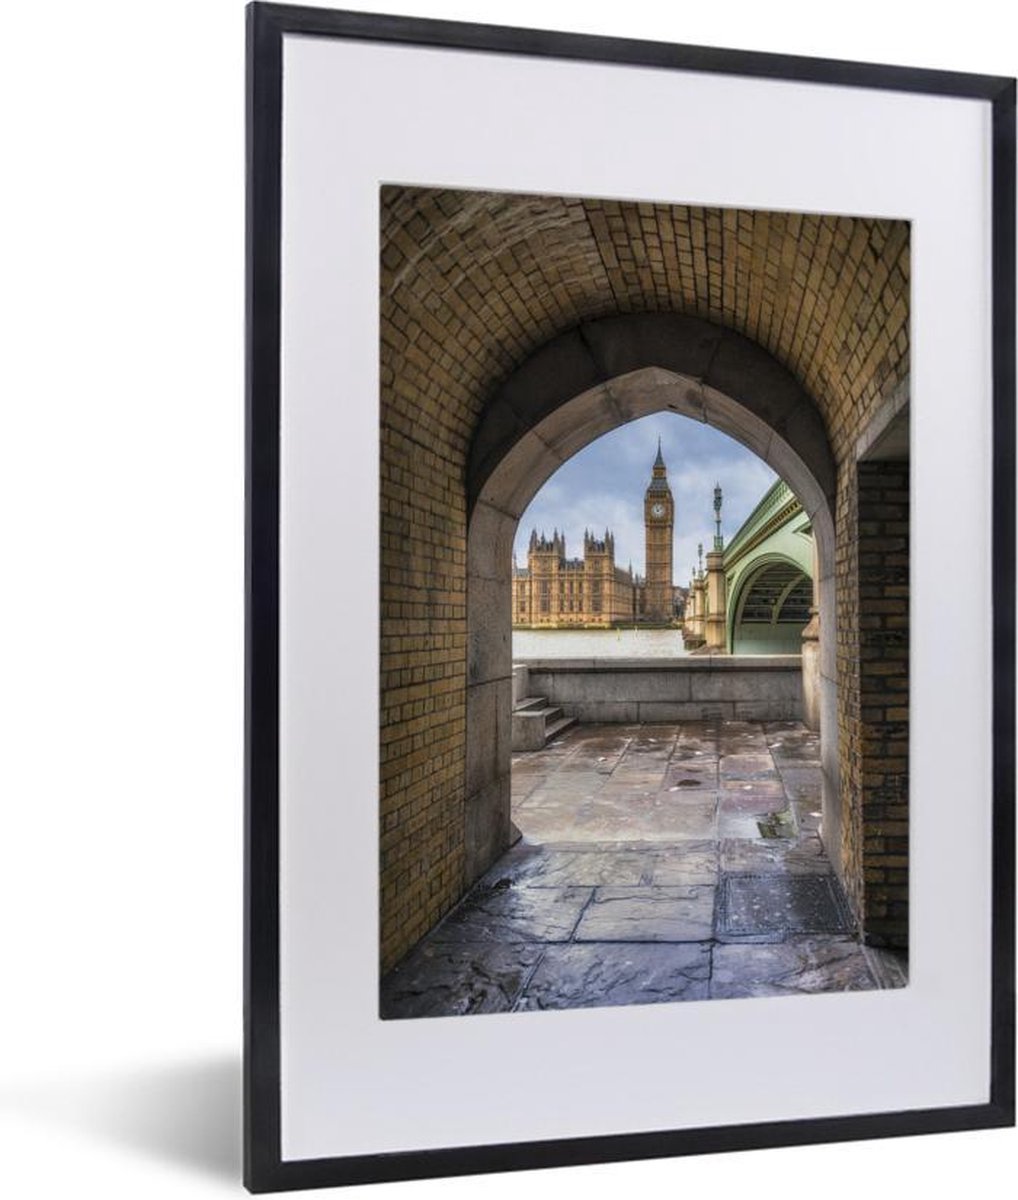 Fotolijst incl. Poster - Uitzicht op de Houses of Parliament en de Westminster Bridge in Londen - 30x40 cm - Posterlijst - PosterMonkey